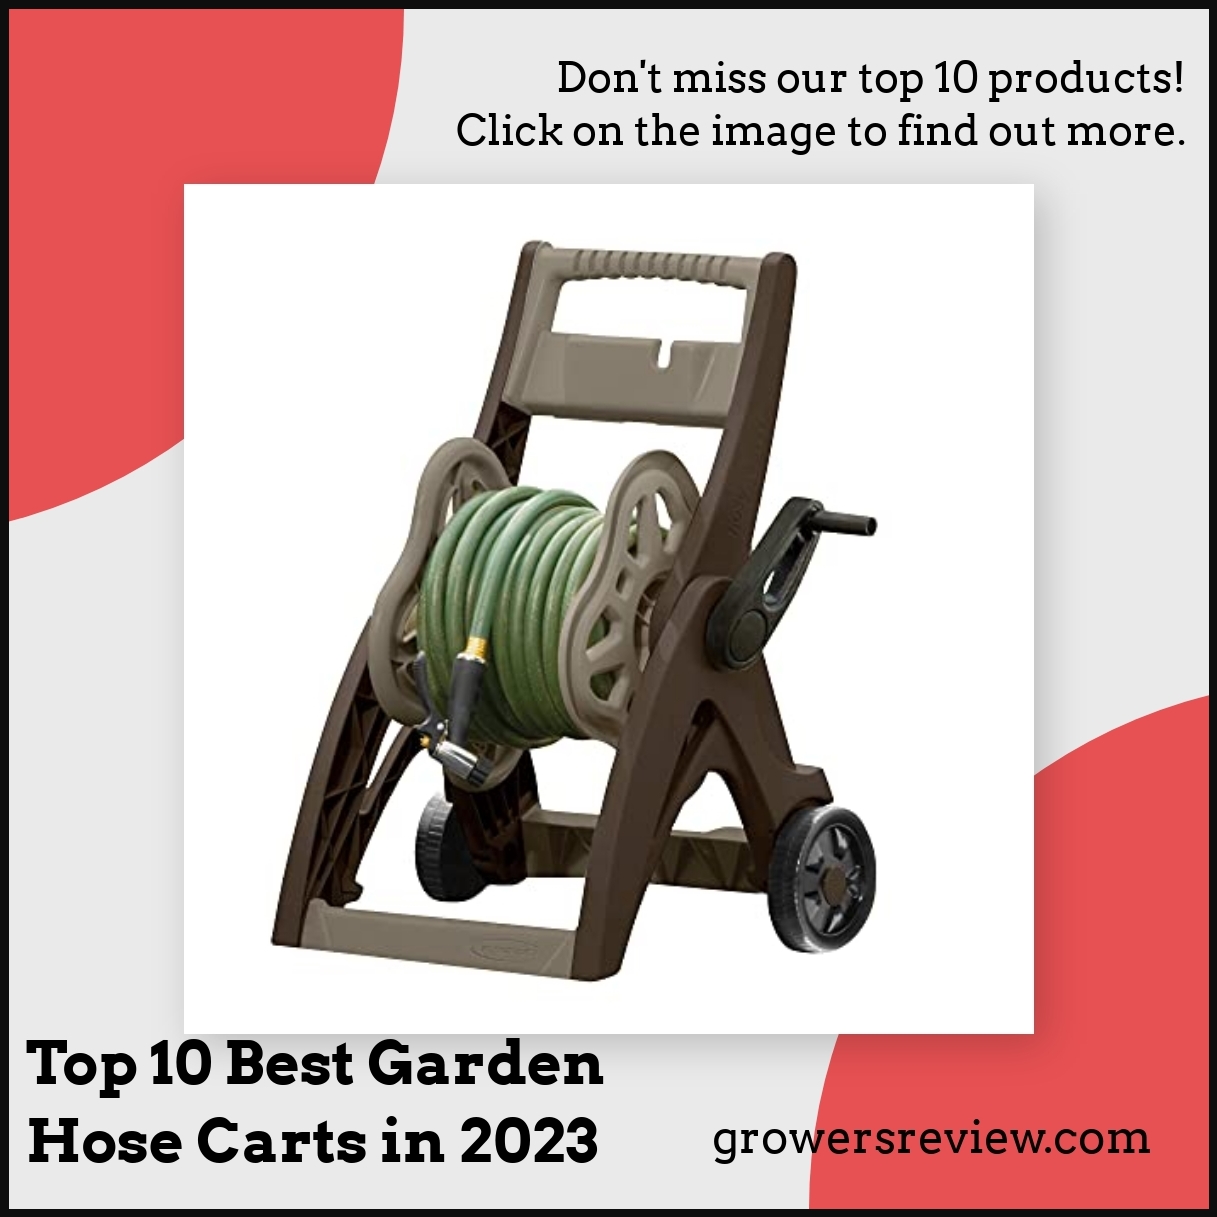 Top 10 Best Garden Hose Carts in 2023